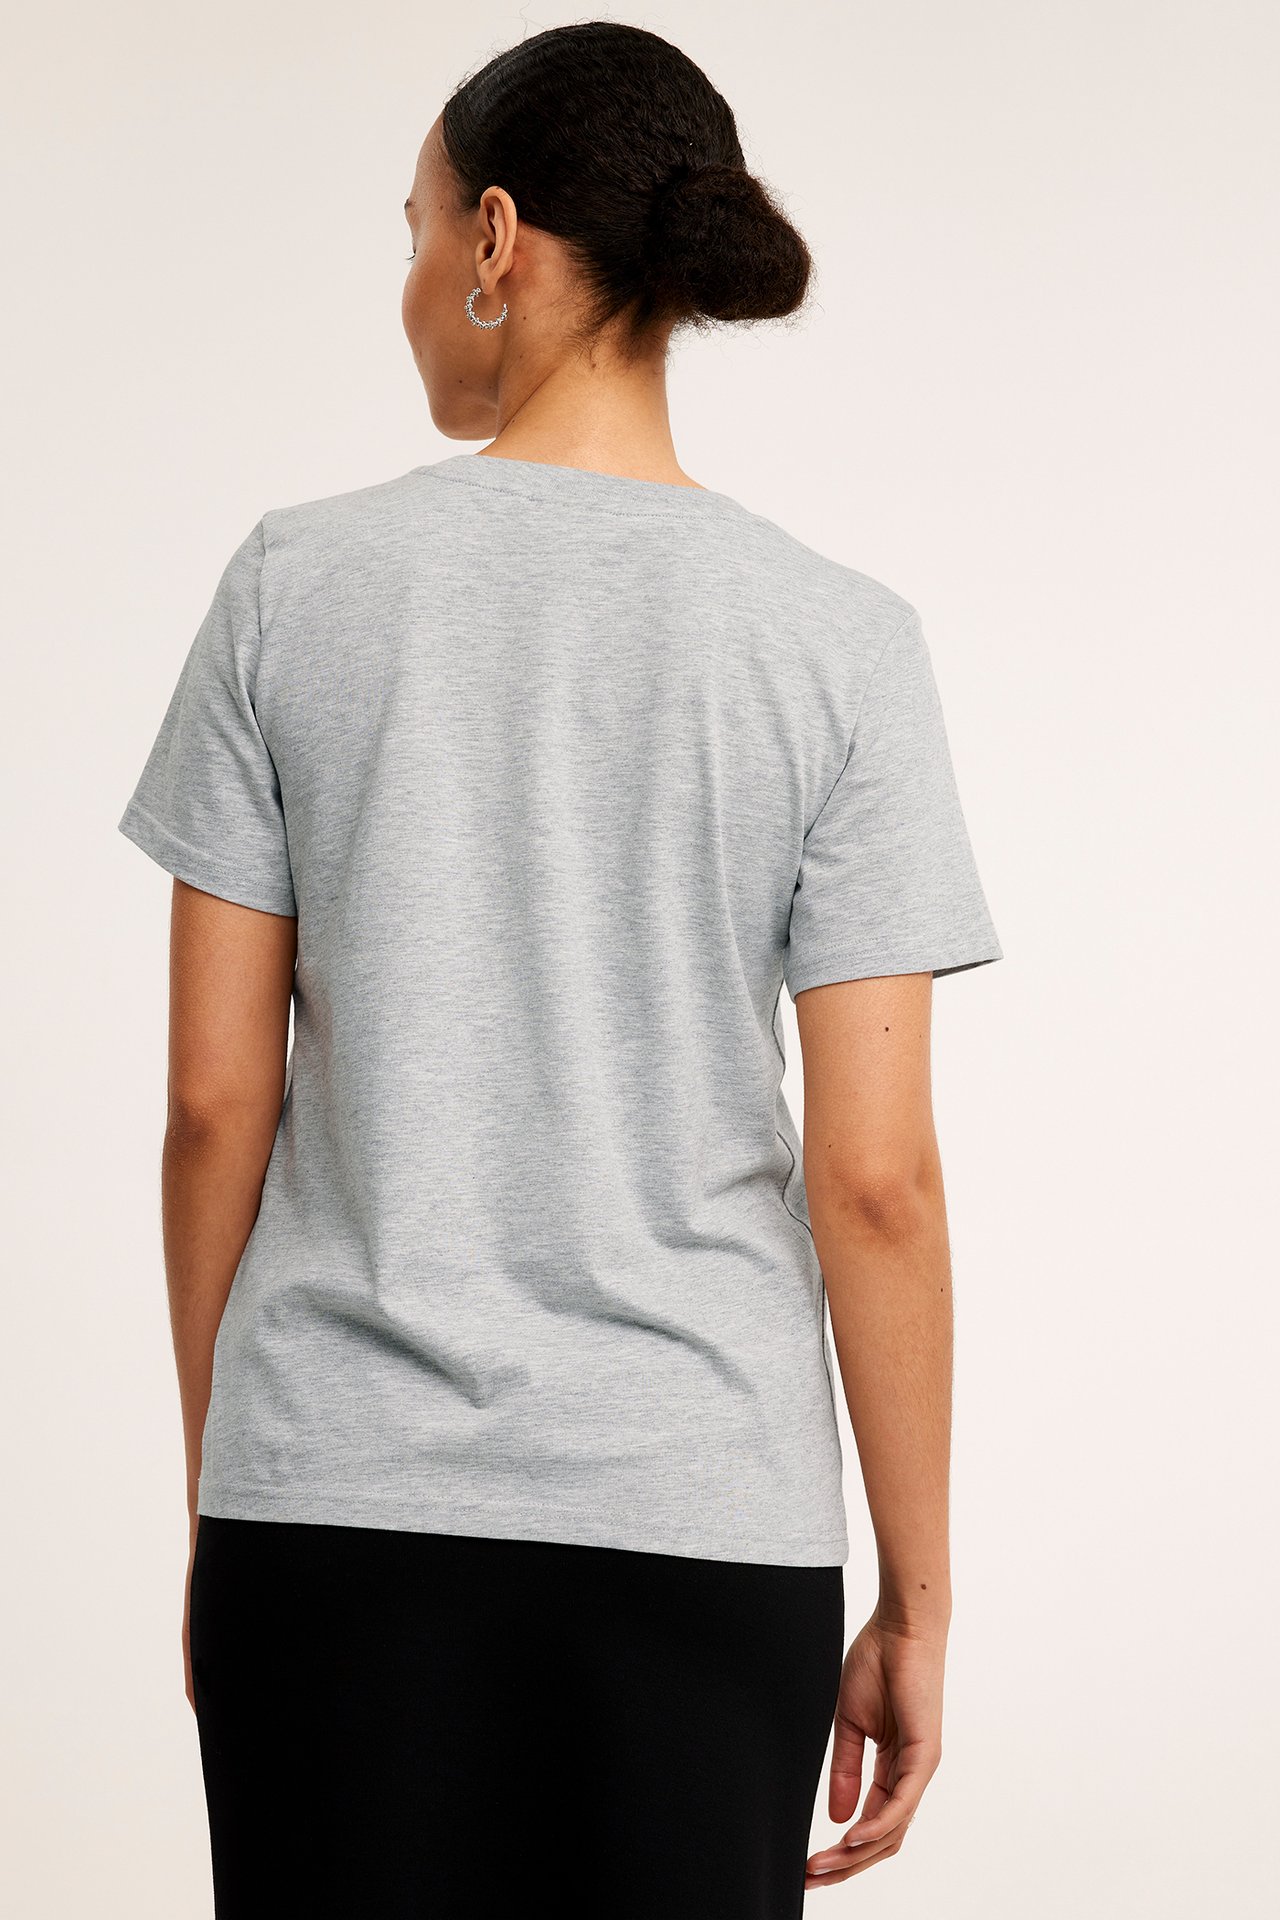 T-shirt - Mörkgrå - 174cm / Storlek: S - 3